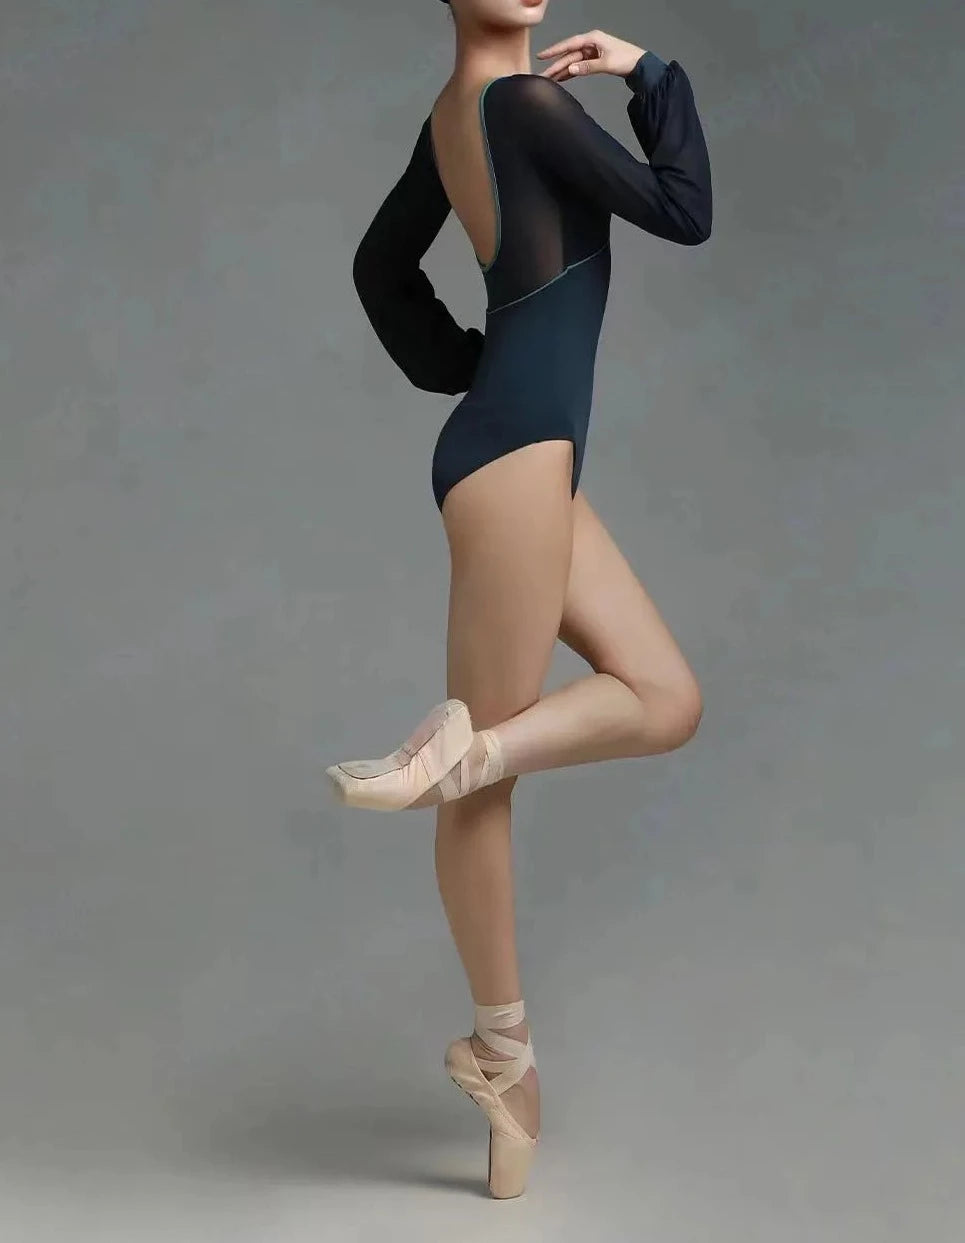 bailarina de ballet vistiendo un leotardo negro de manga larga